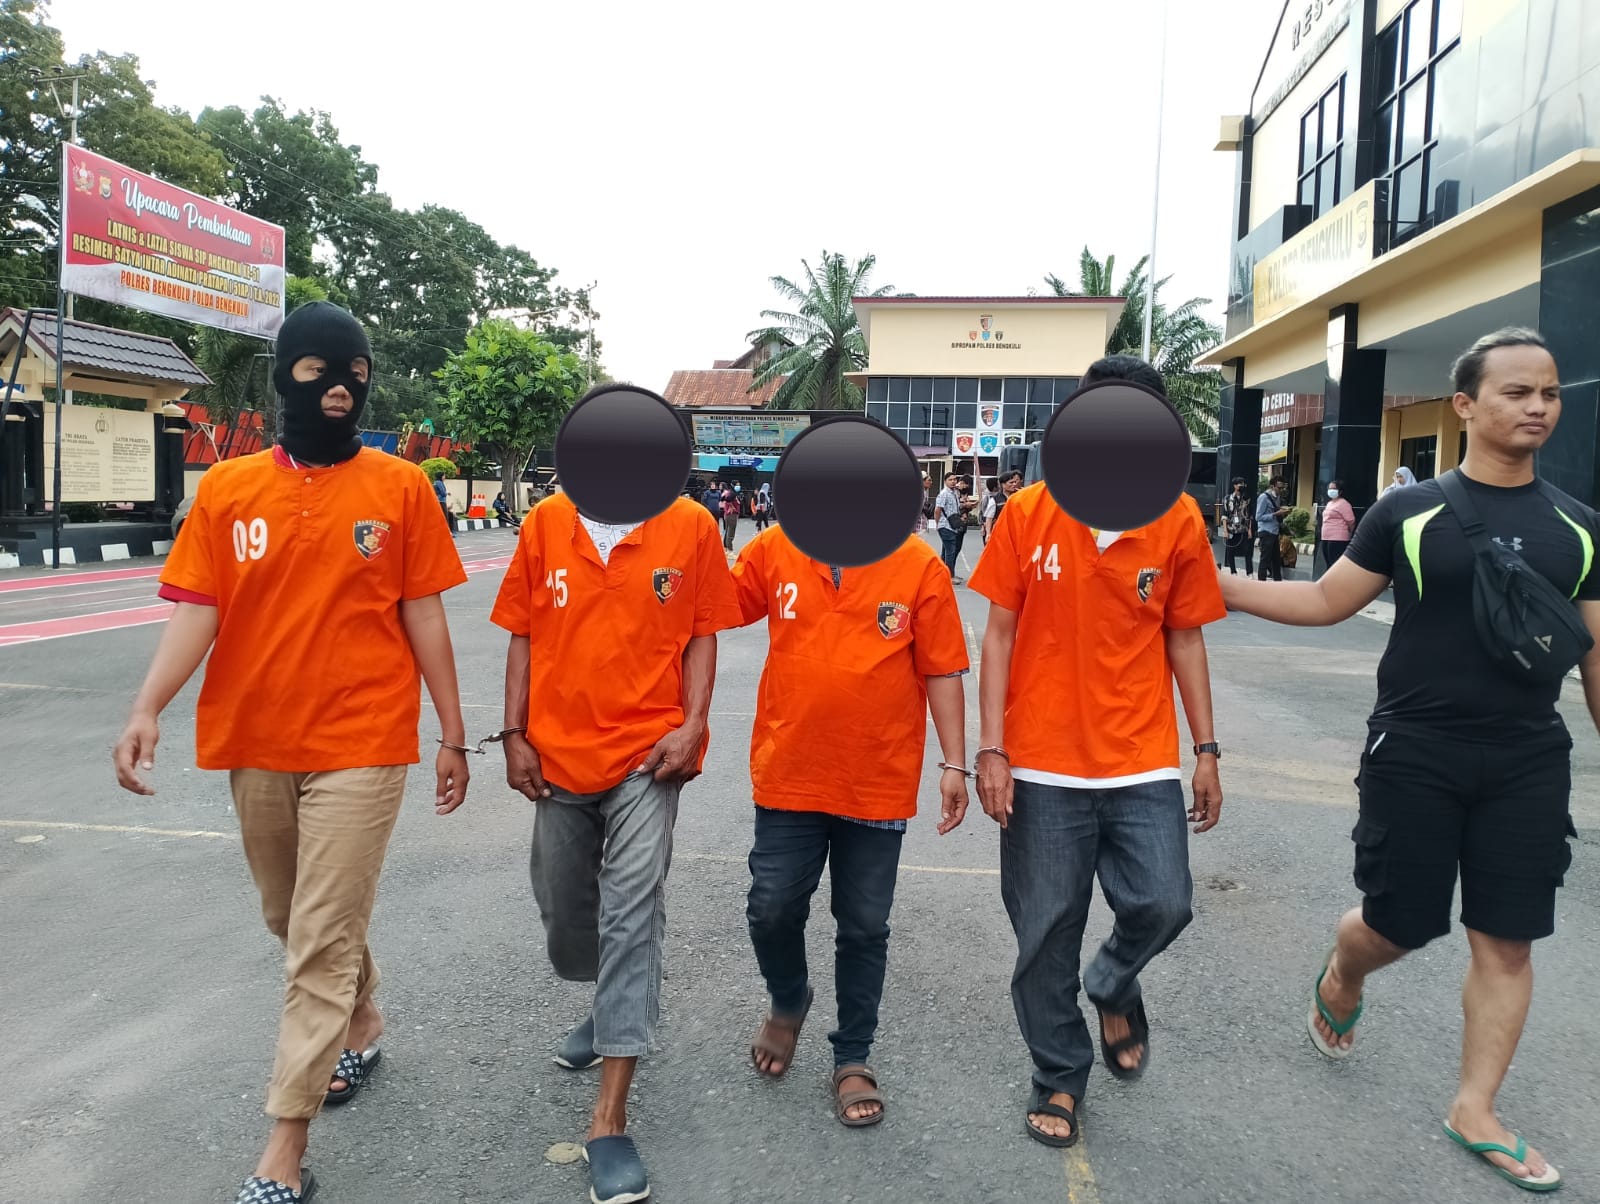 Anak Disabilitias di Bengkulu Disetubuhi 10 Orang; Pelaku Mulai dari Tukang Ojek, Buruh, Hingga Mahasiswa